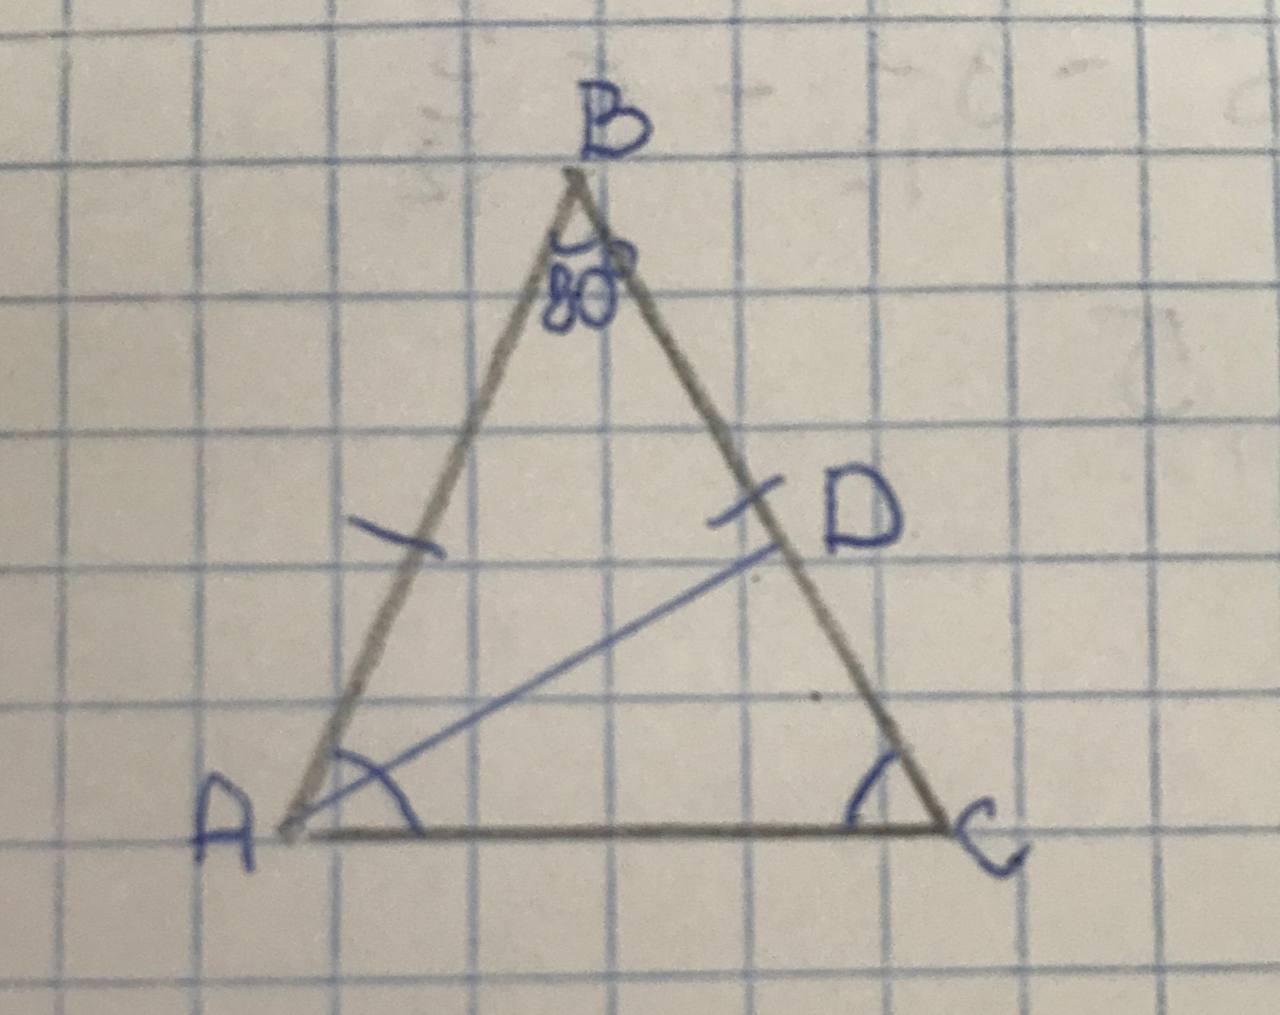 Равнобедренный треугольник авс ас св. Дано ab=BC найти углы треугольника. АВС равносторонний BK 2 корня из 3 см. Вырежьте из листа бумаги равнобедренный треугольник АВС АС основание. Дано DH (ABC), AC =8, ab = BC = 80, dah=dbh=DCH=45.